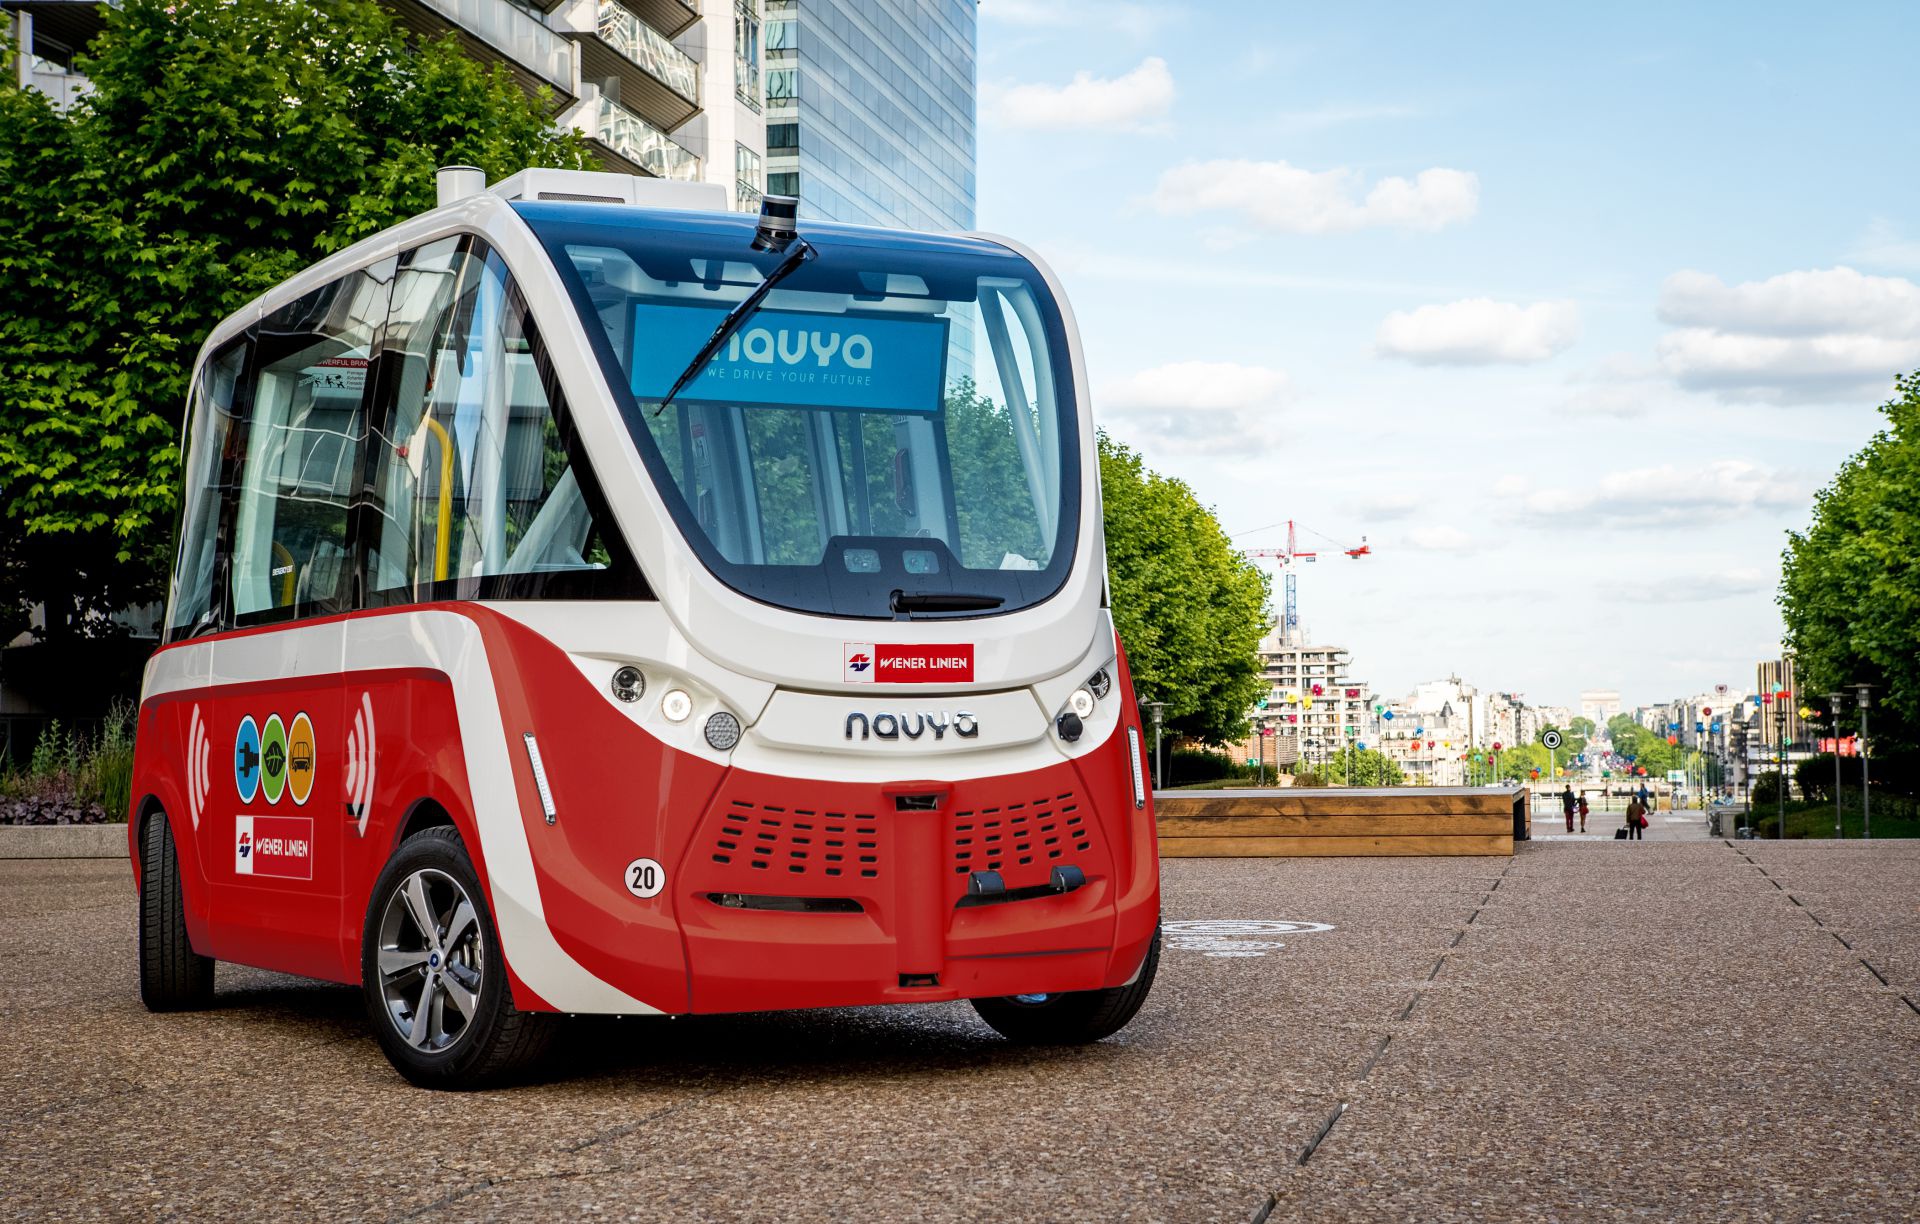 auto.Bus - Seestadt | Technologieentwicklungen zum autonomen Fahren im ÖPNV